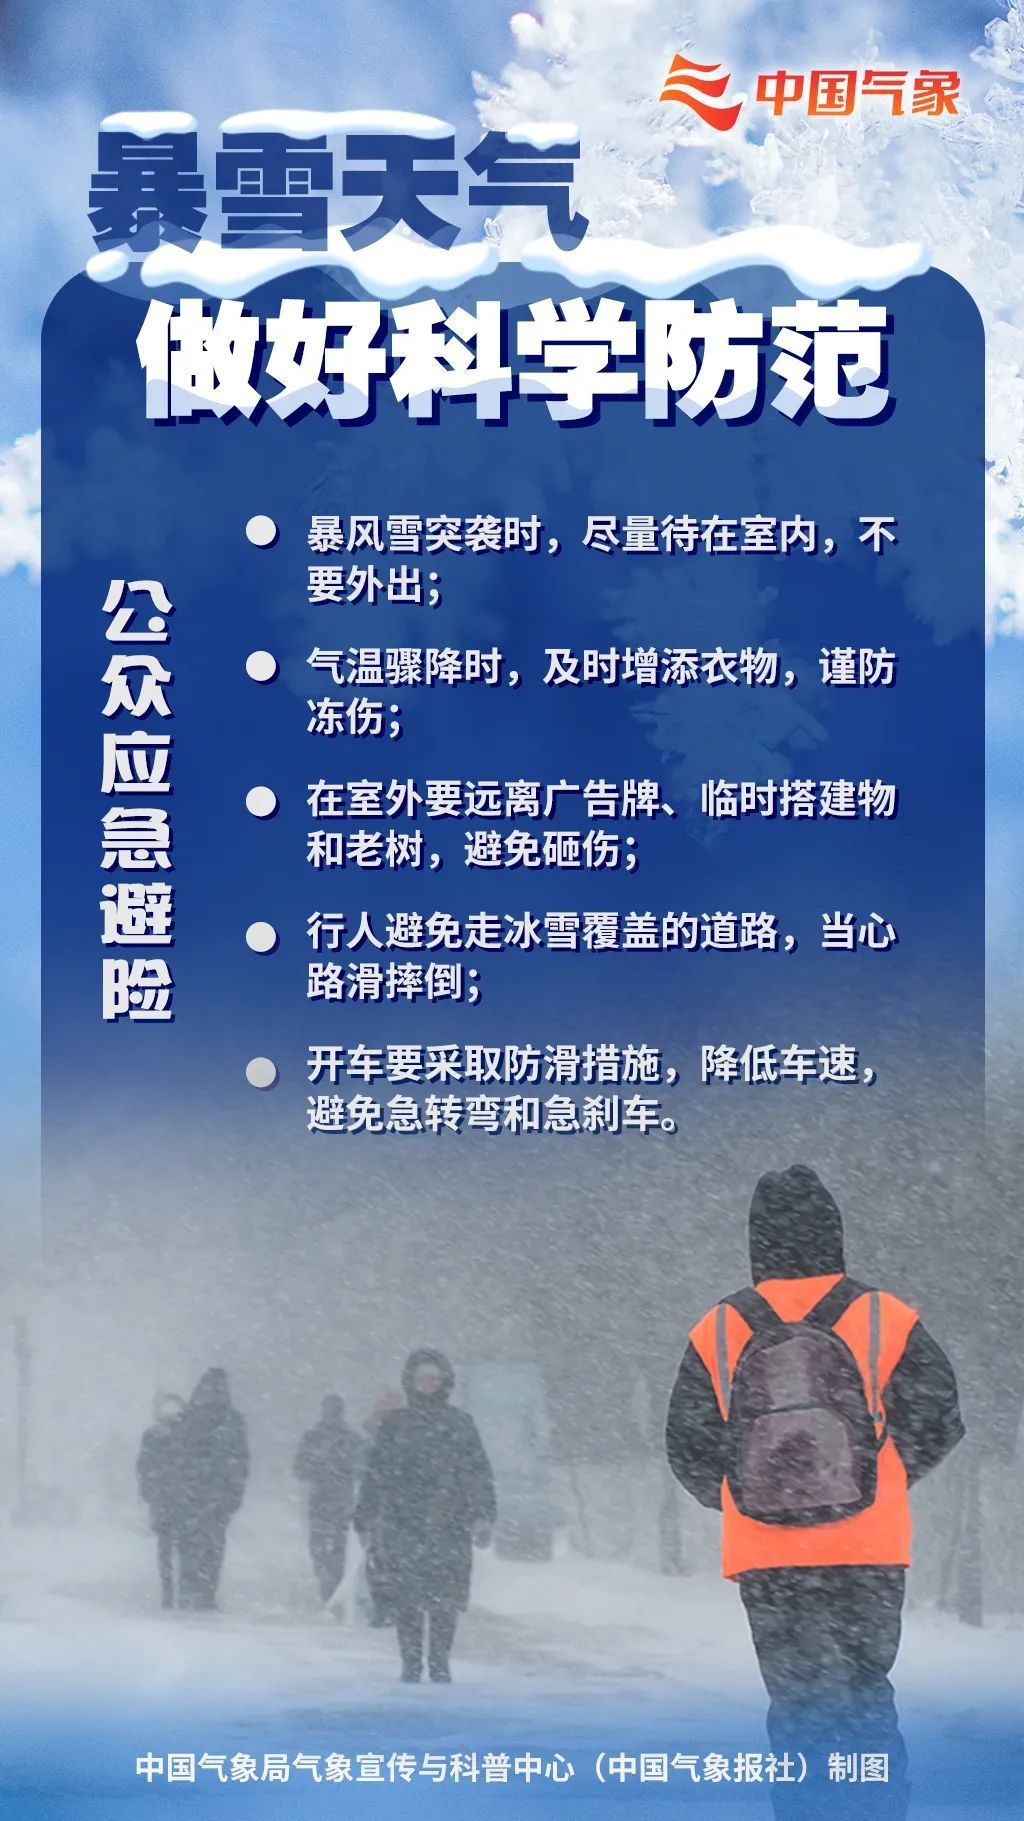 三预警齐发中国气象局启动三级应急响应